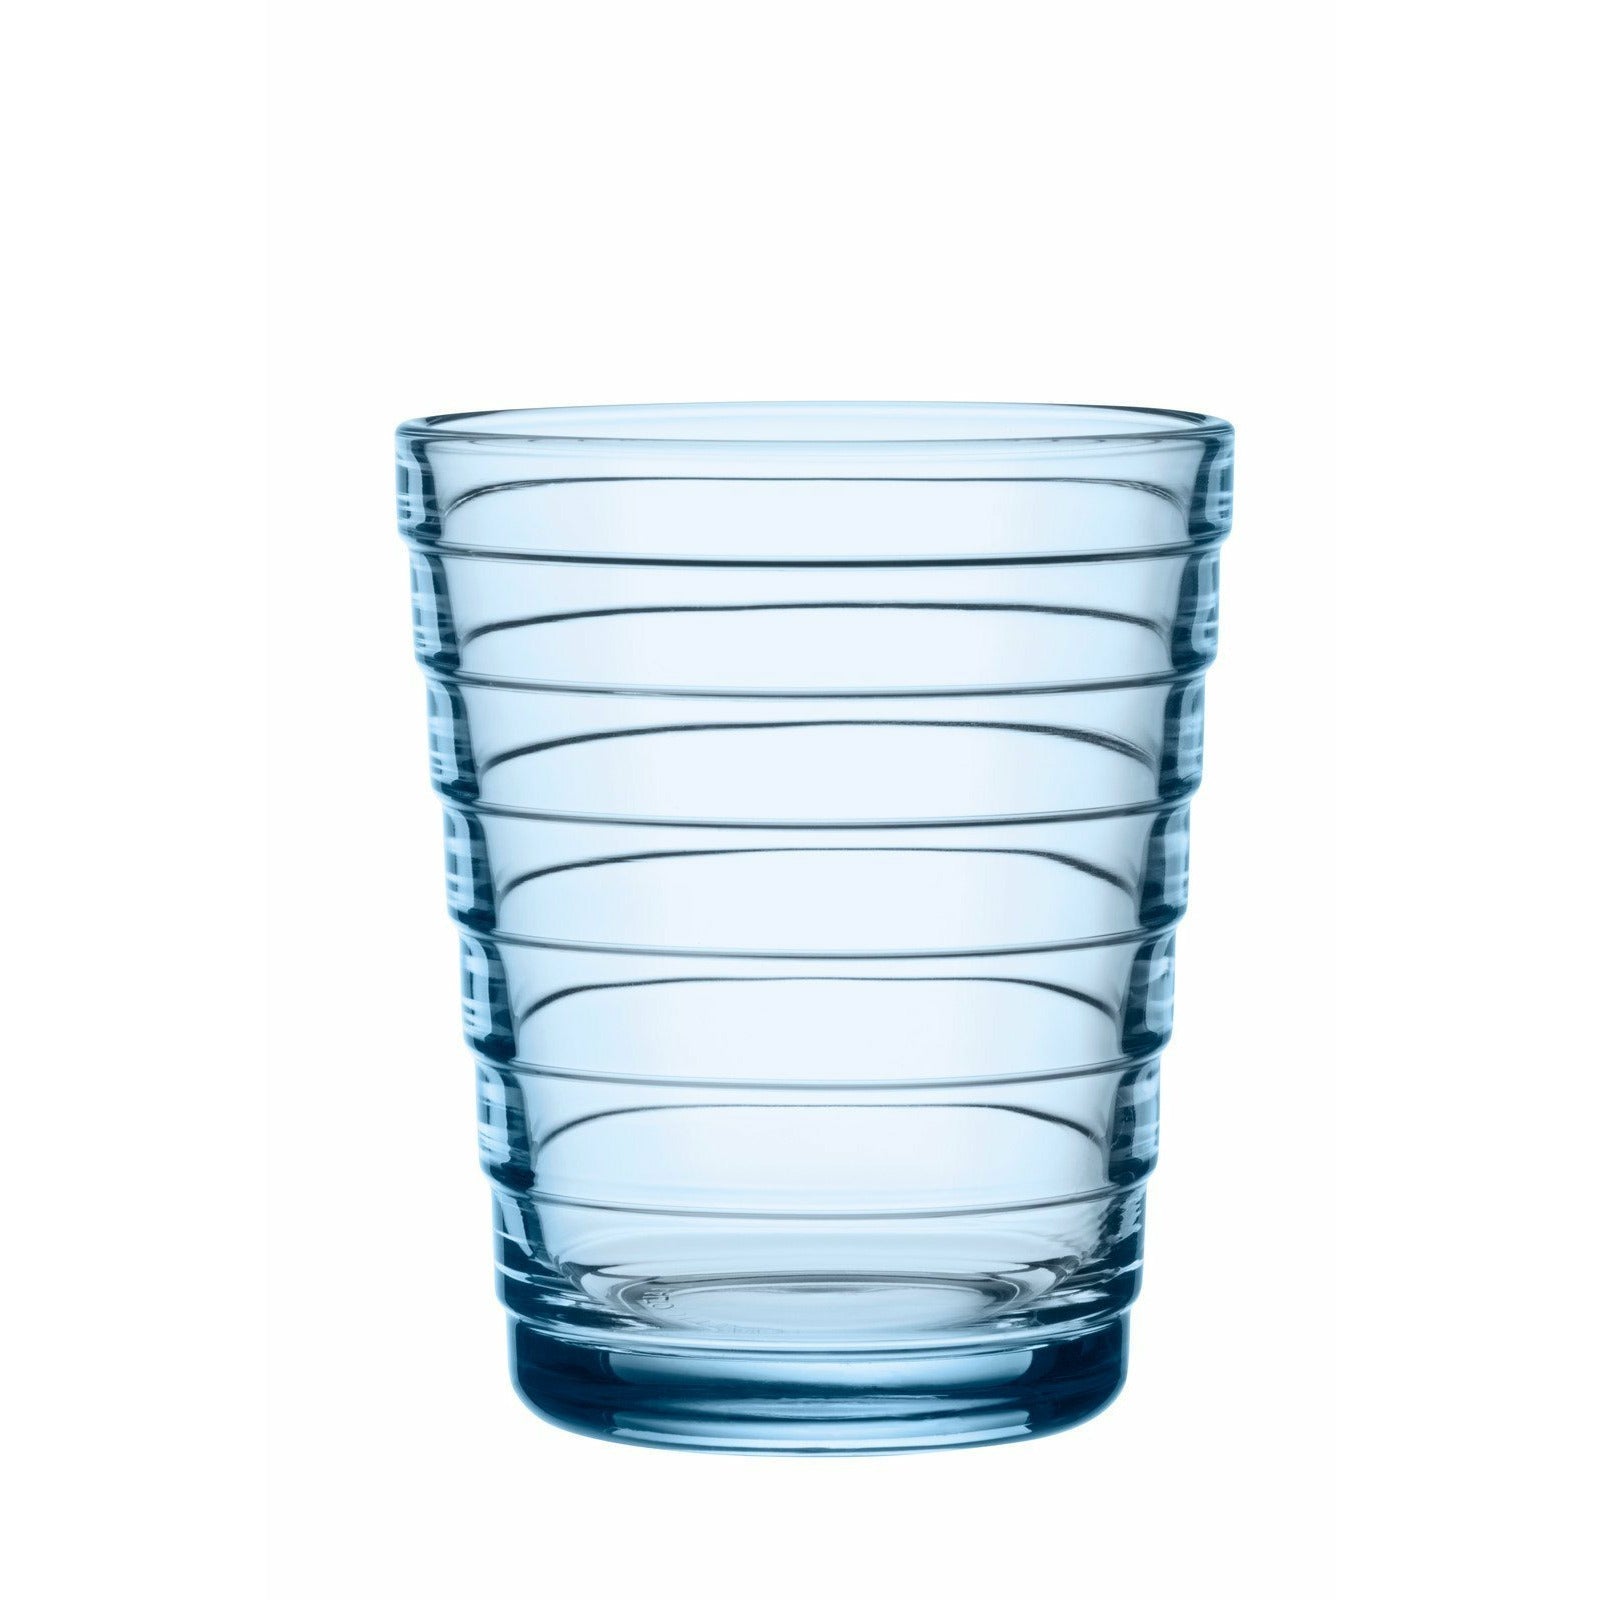 Iittala Aino Aalto juomasi lasi Aqua 22cl, 2kpl.